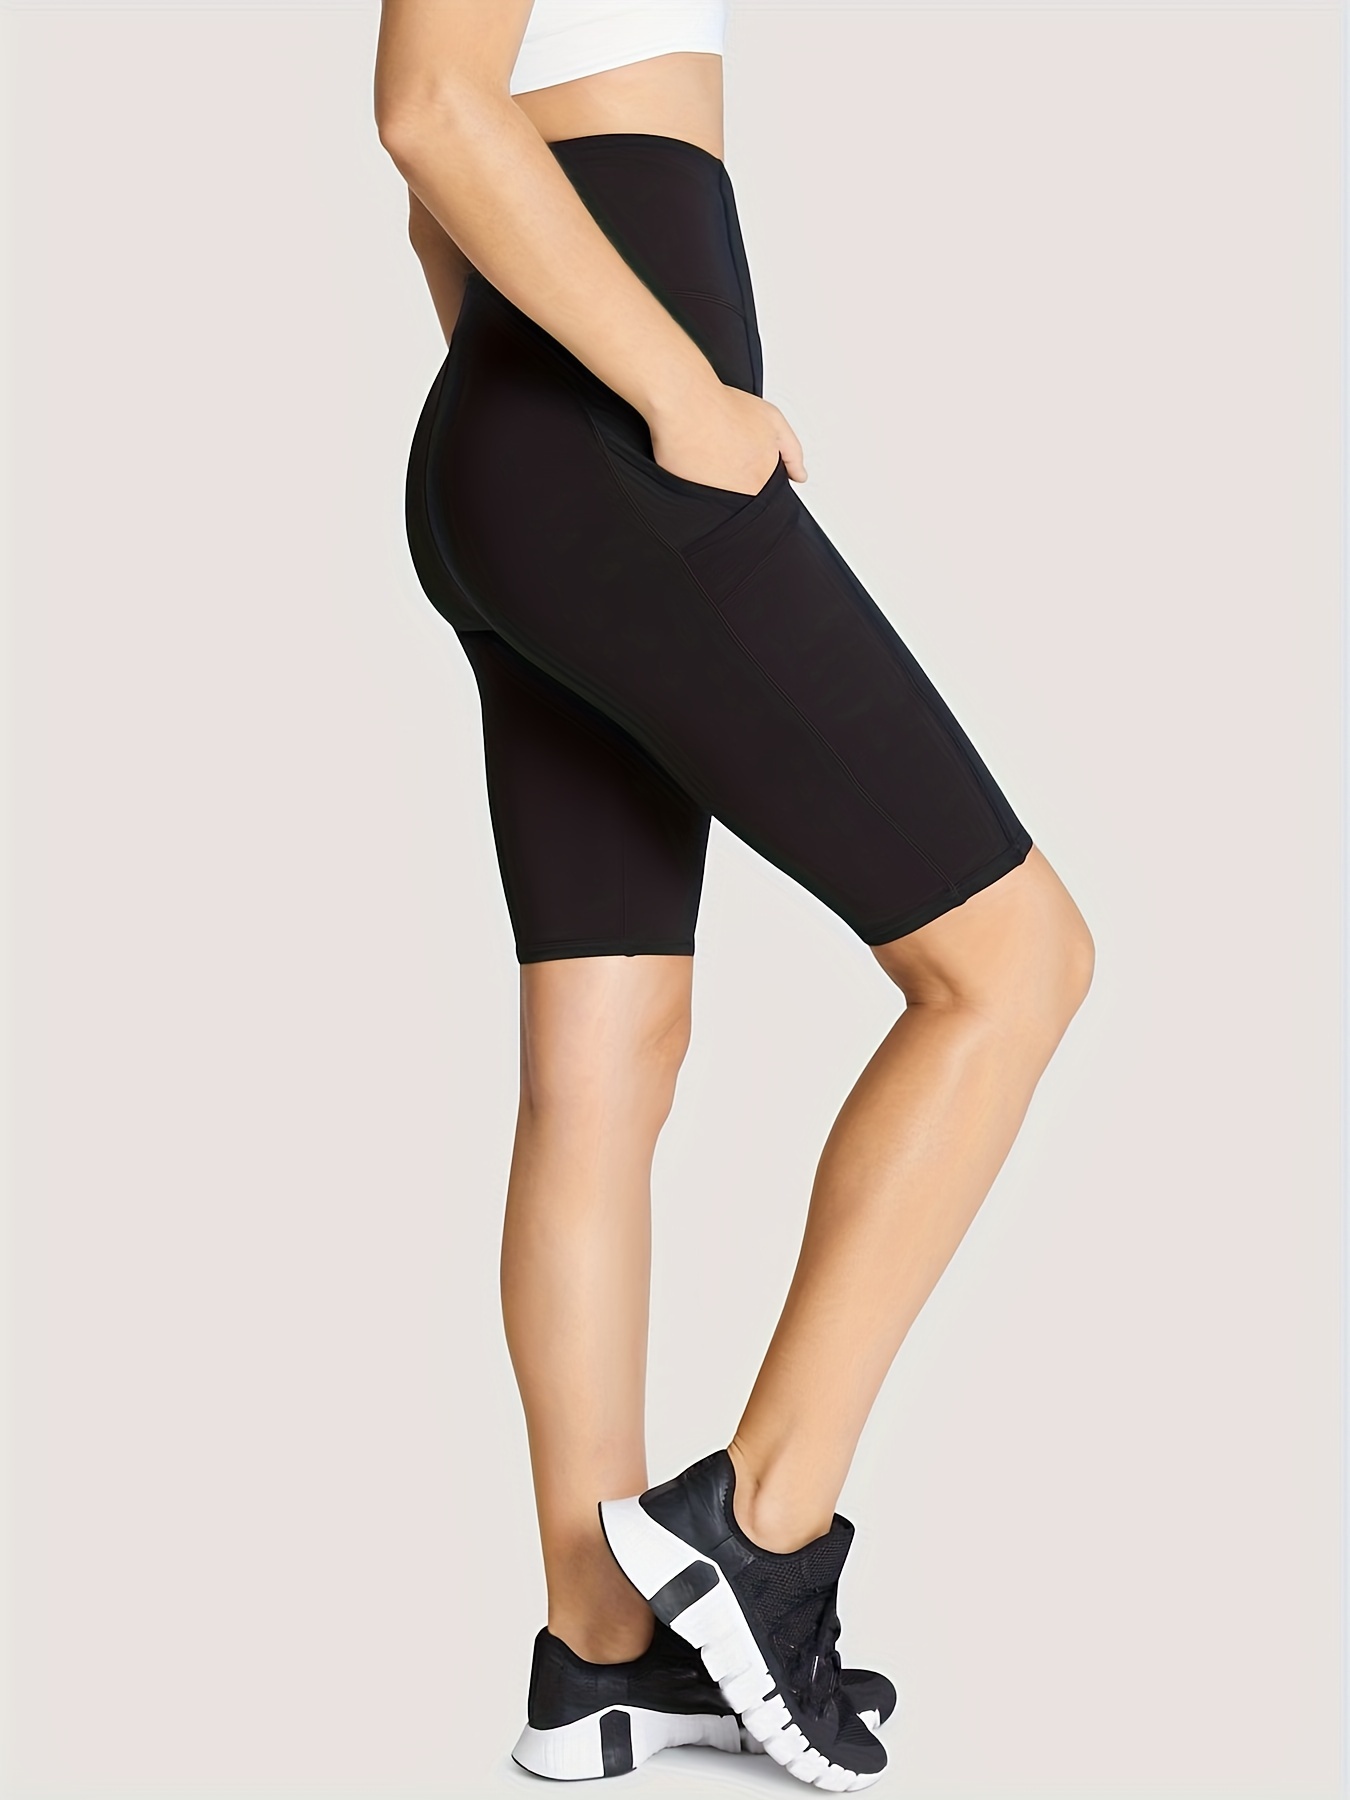 High Waist Seamless Sport Shorts For Women Elasticated Fitness